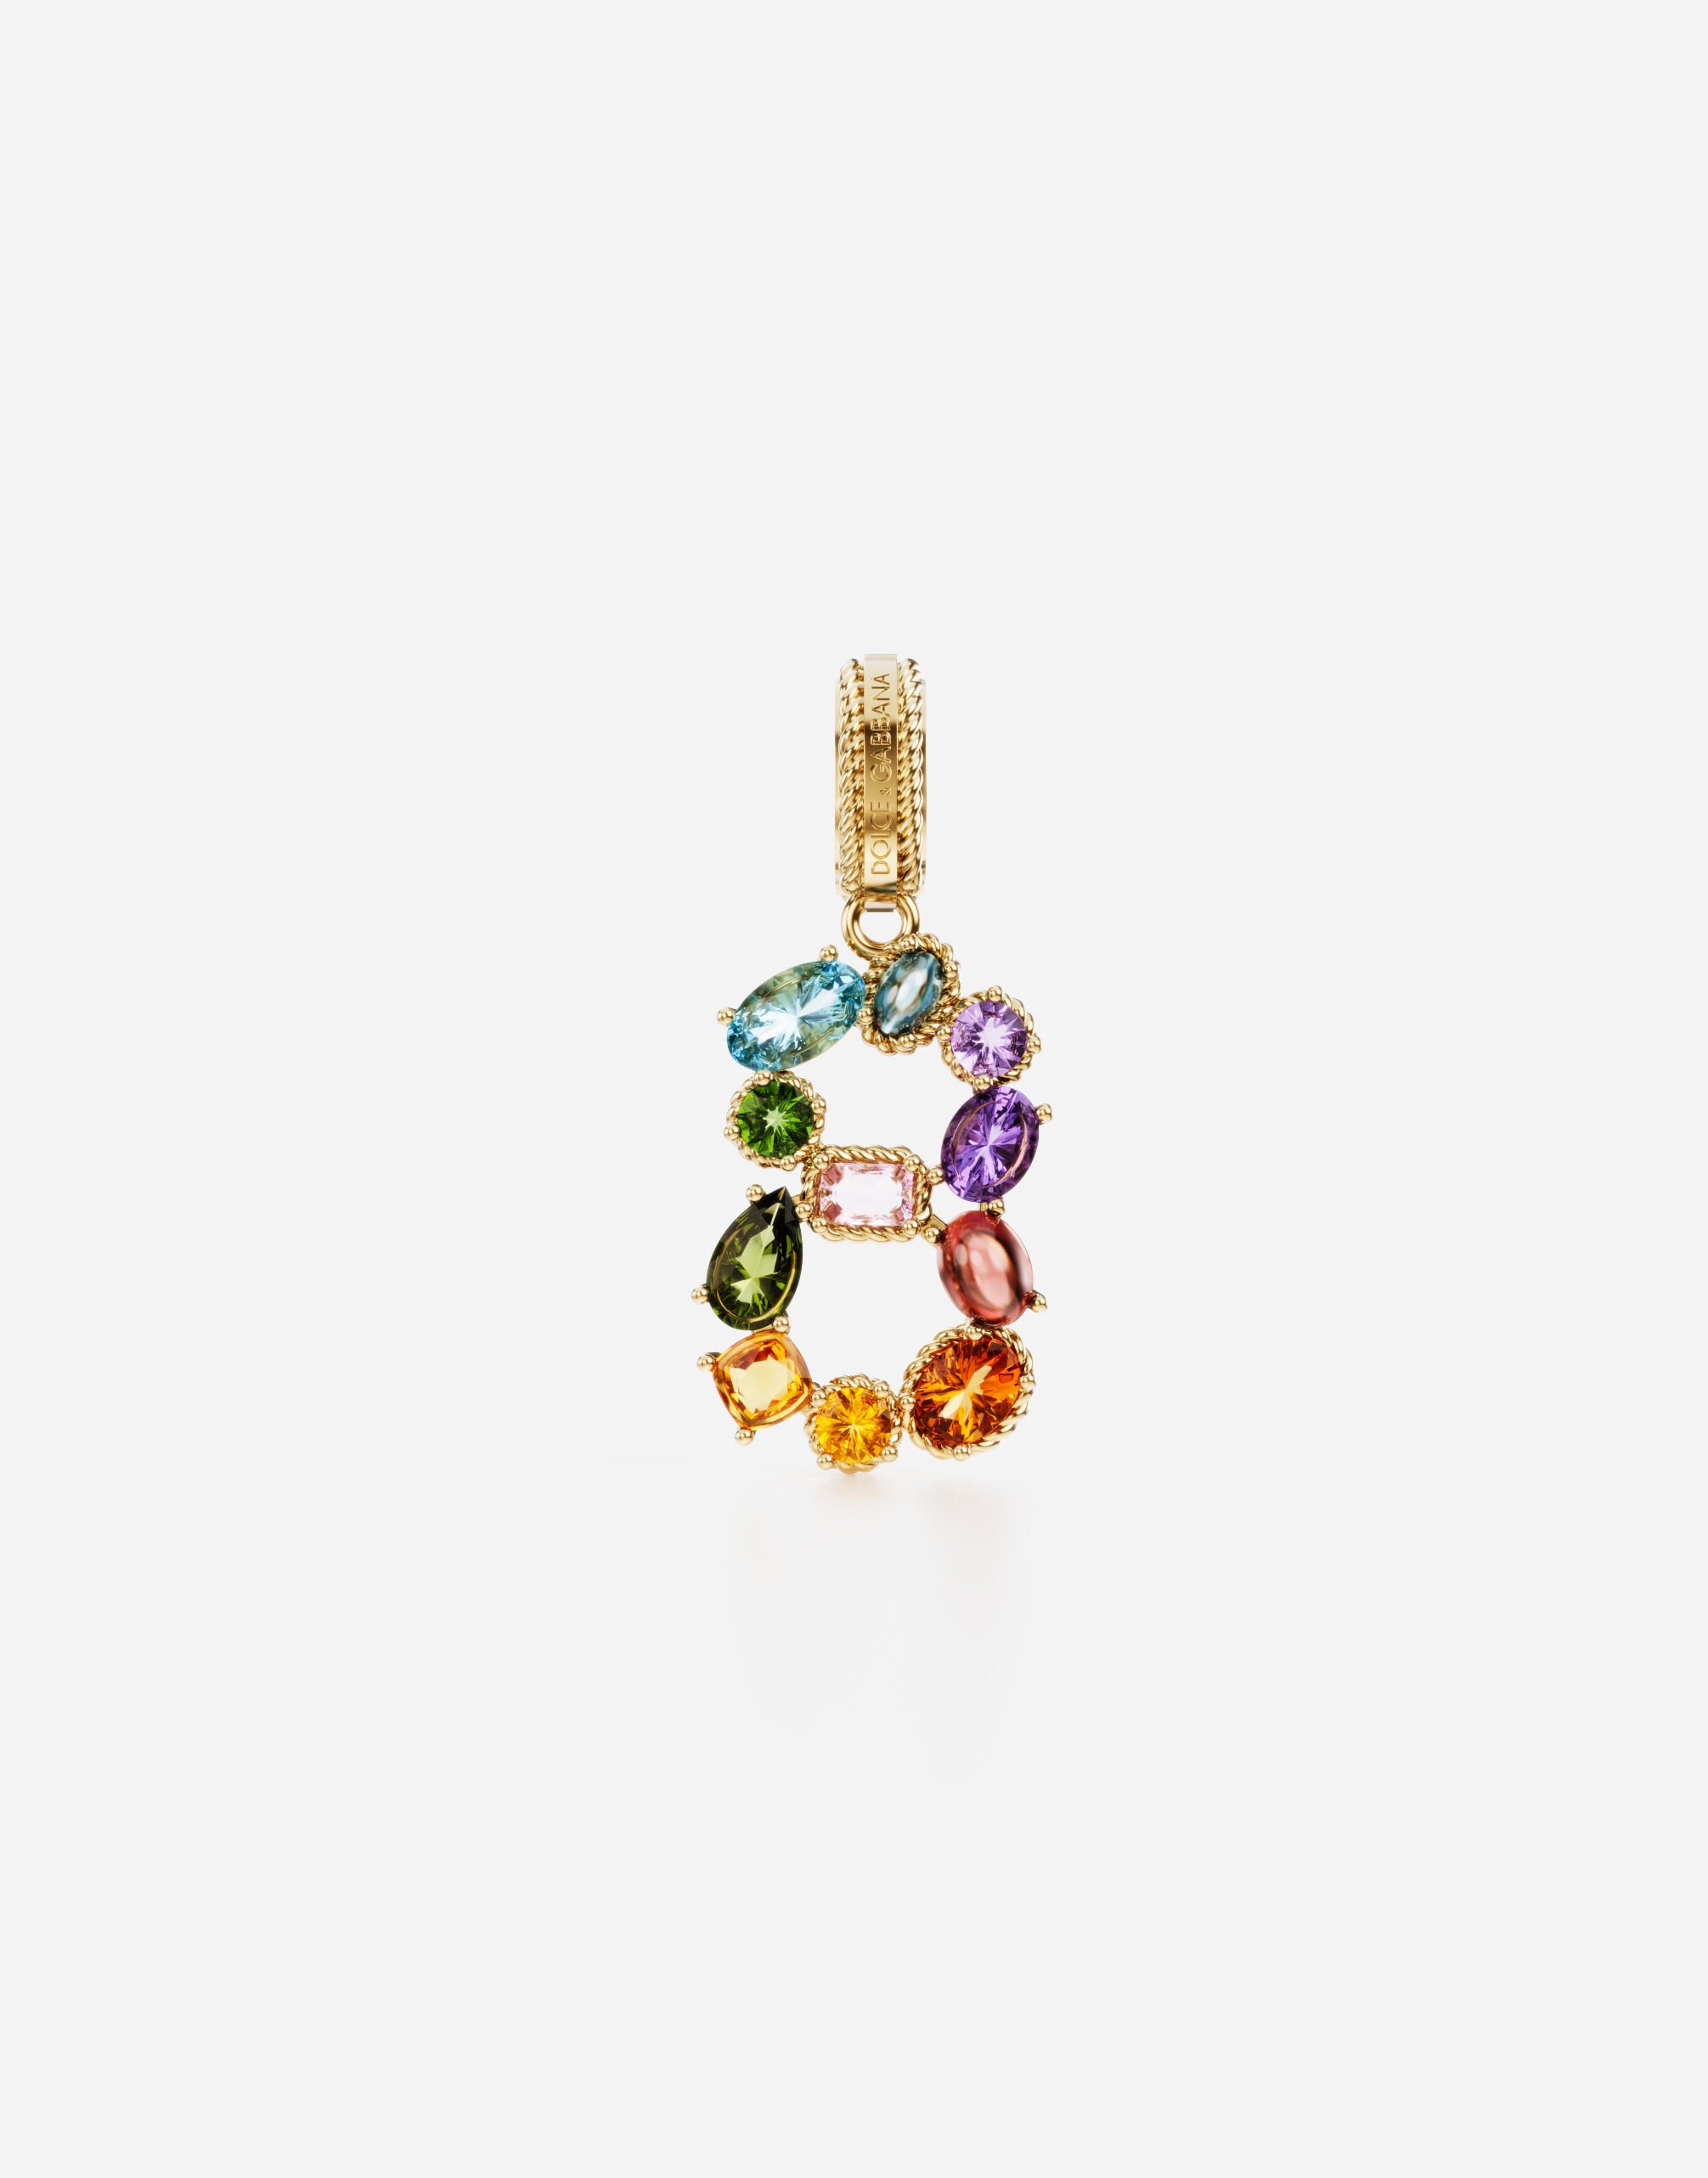 Dolce & Gabbana Anhänger „Rainbow“ aus 18 kt Gelbgold mit mehrfarbigen Edelsteinen, die die Zahl 8 darstellen GOLD WANR1GWMIXD